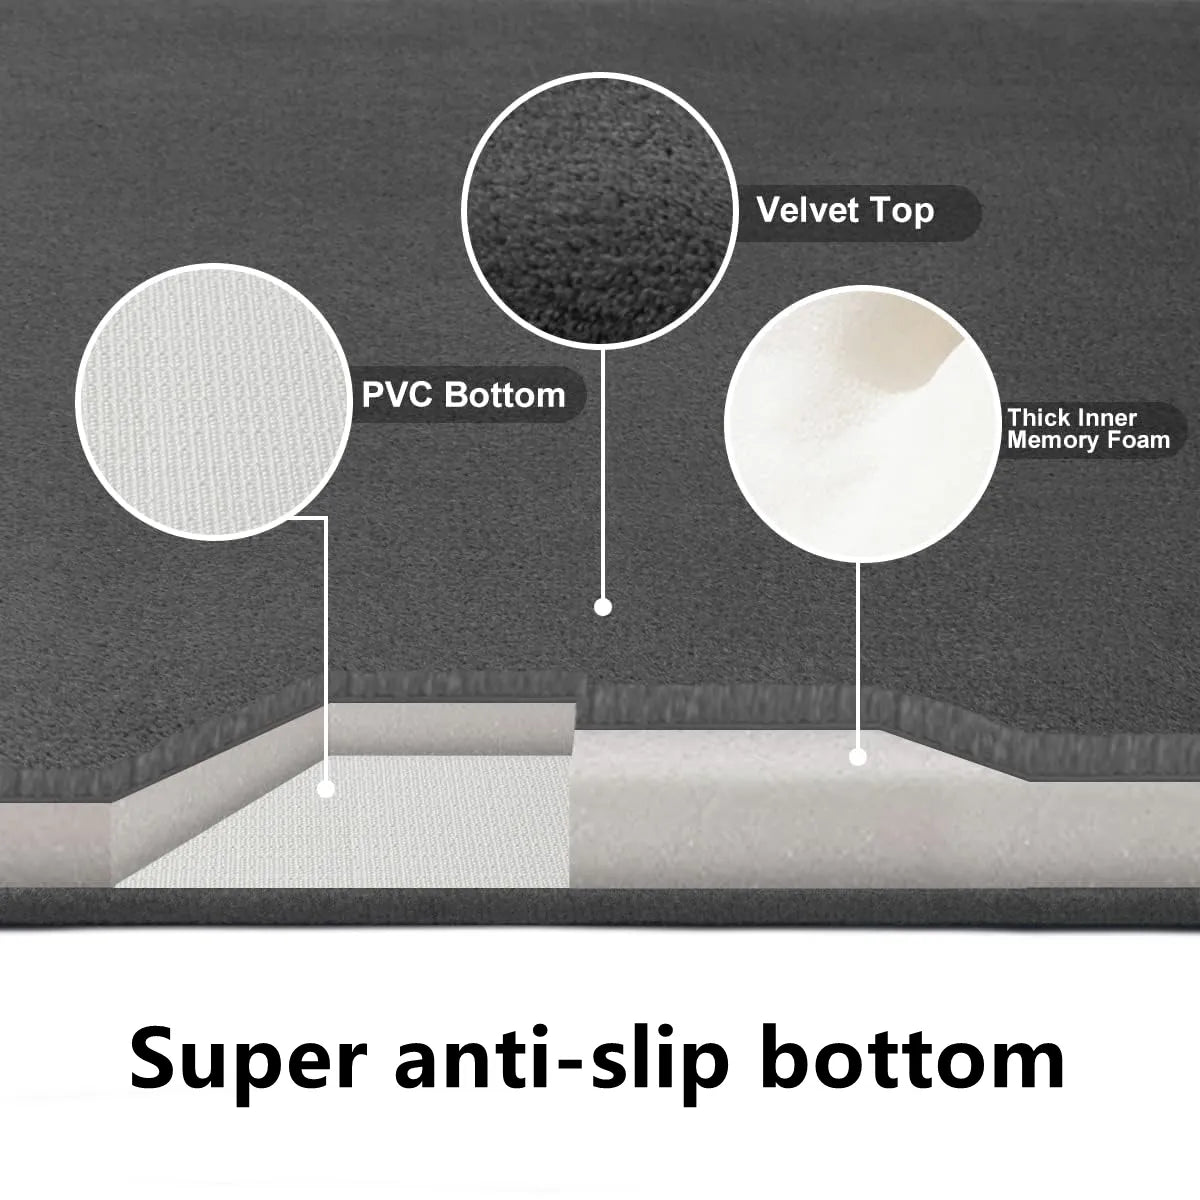 Super absorbent floor bath mats